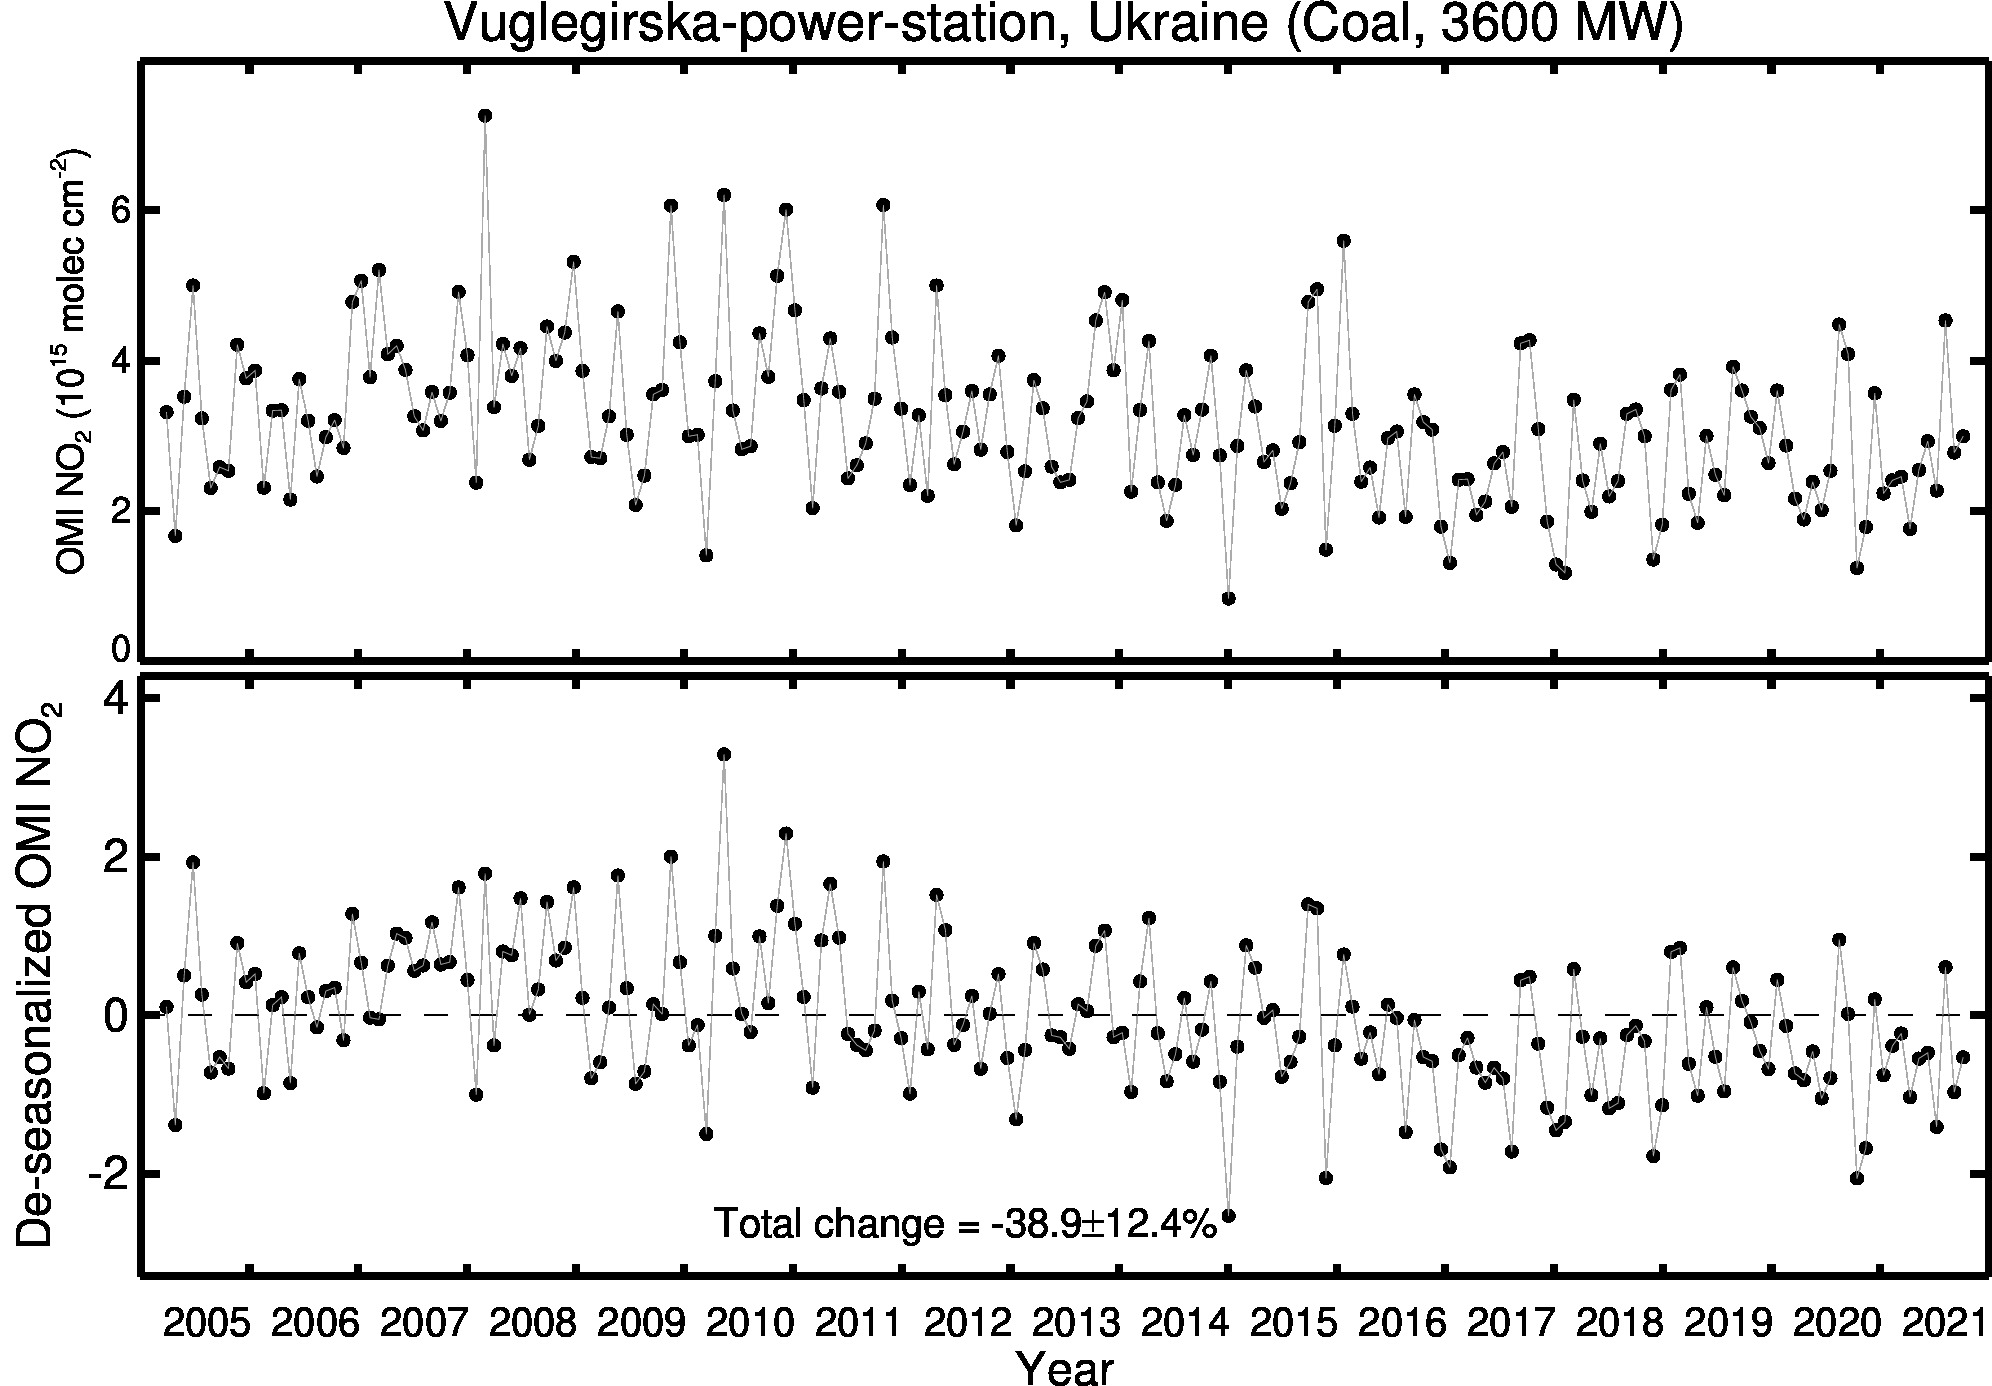 Vuglegirska power station Line Plot 2005-2021